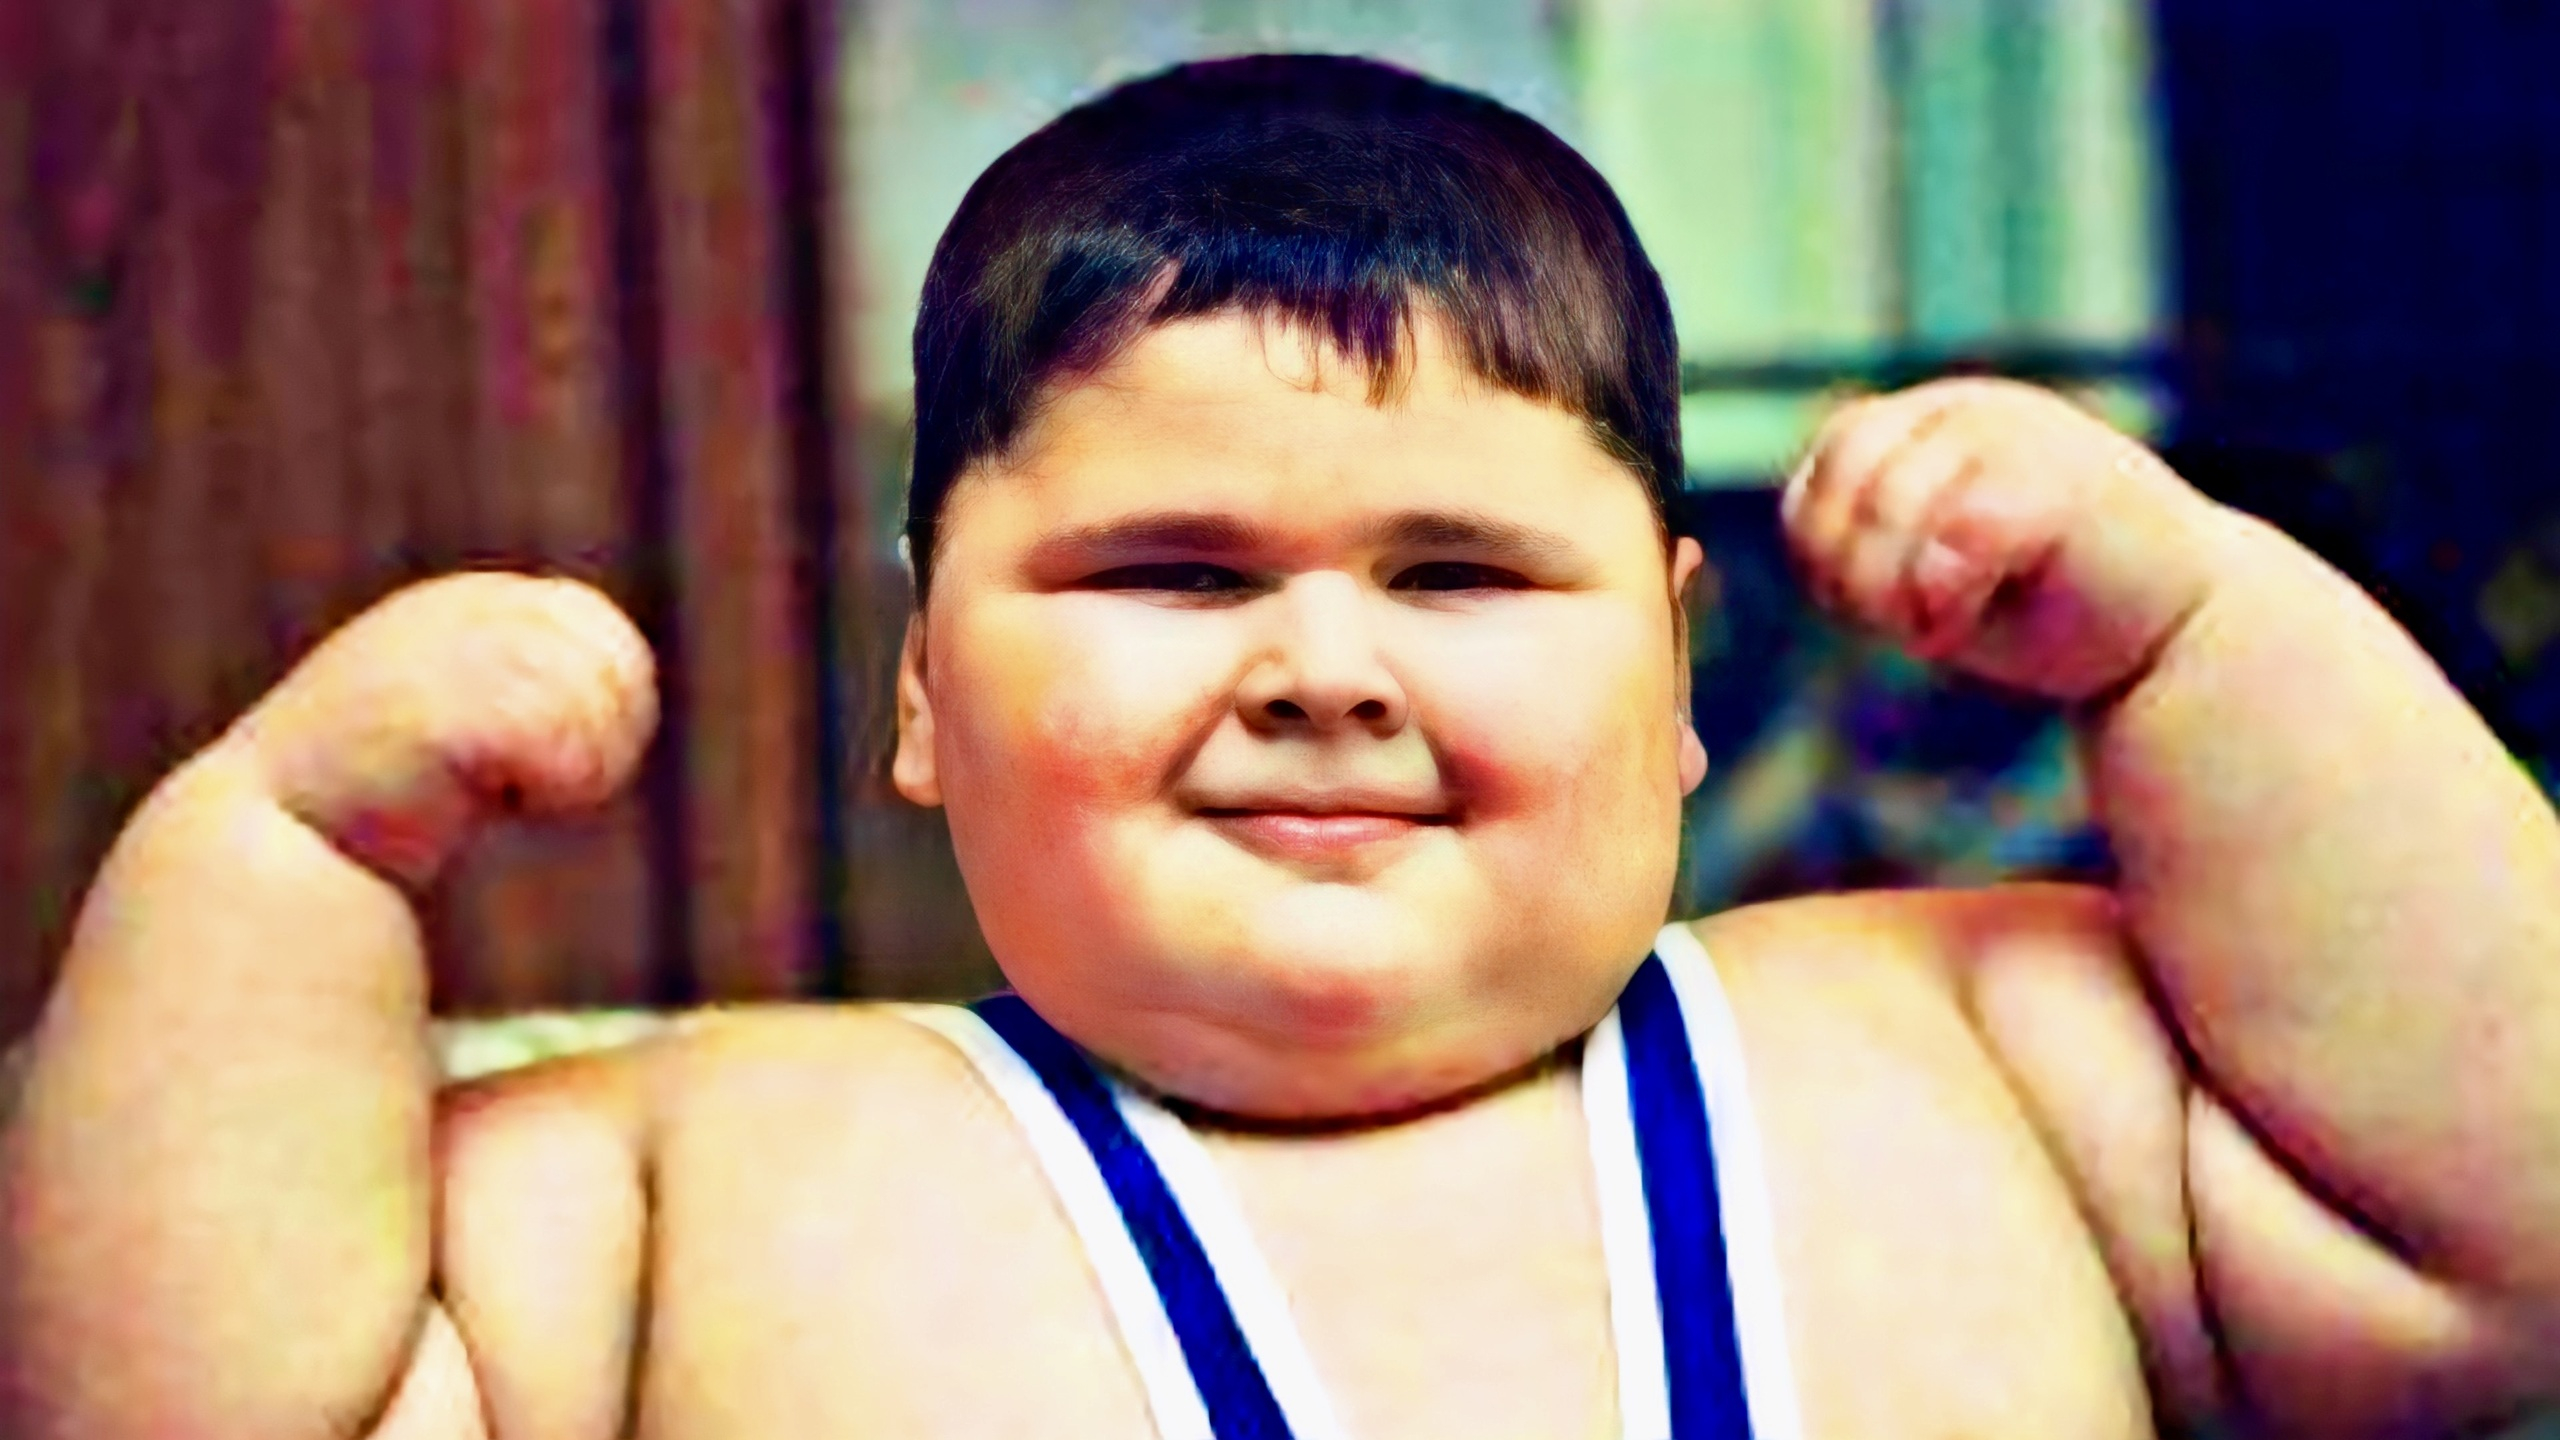 Покажи толстого мальчика. Джамбулат Хатохов. Джамбулат Хатохов худой. Самый толстый мальчик в мире Джамбулат Хатохов.